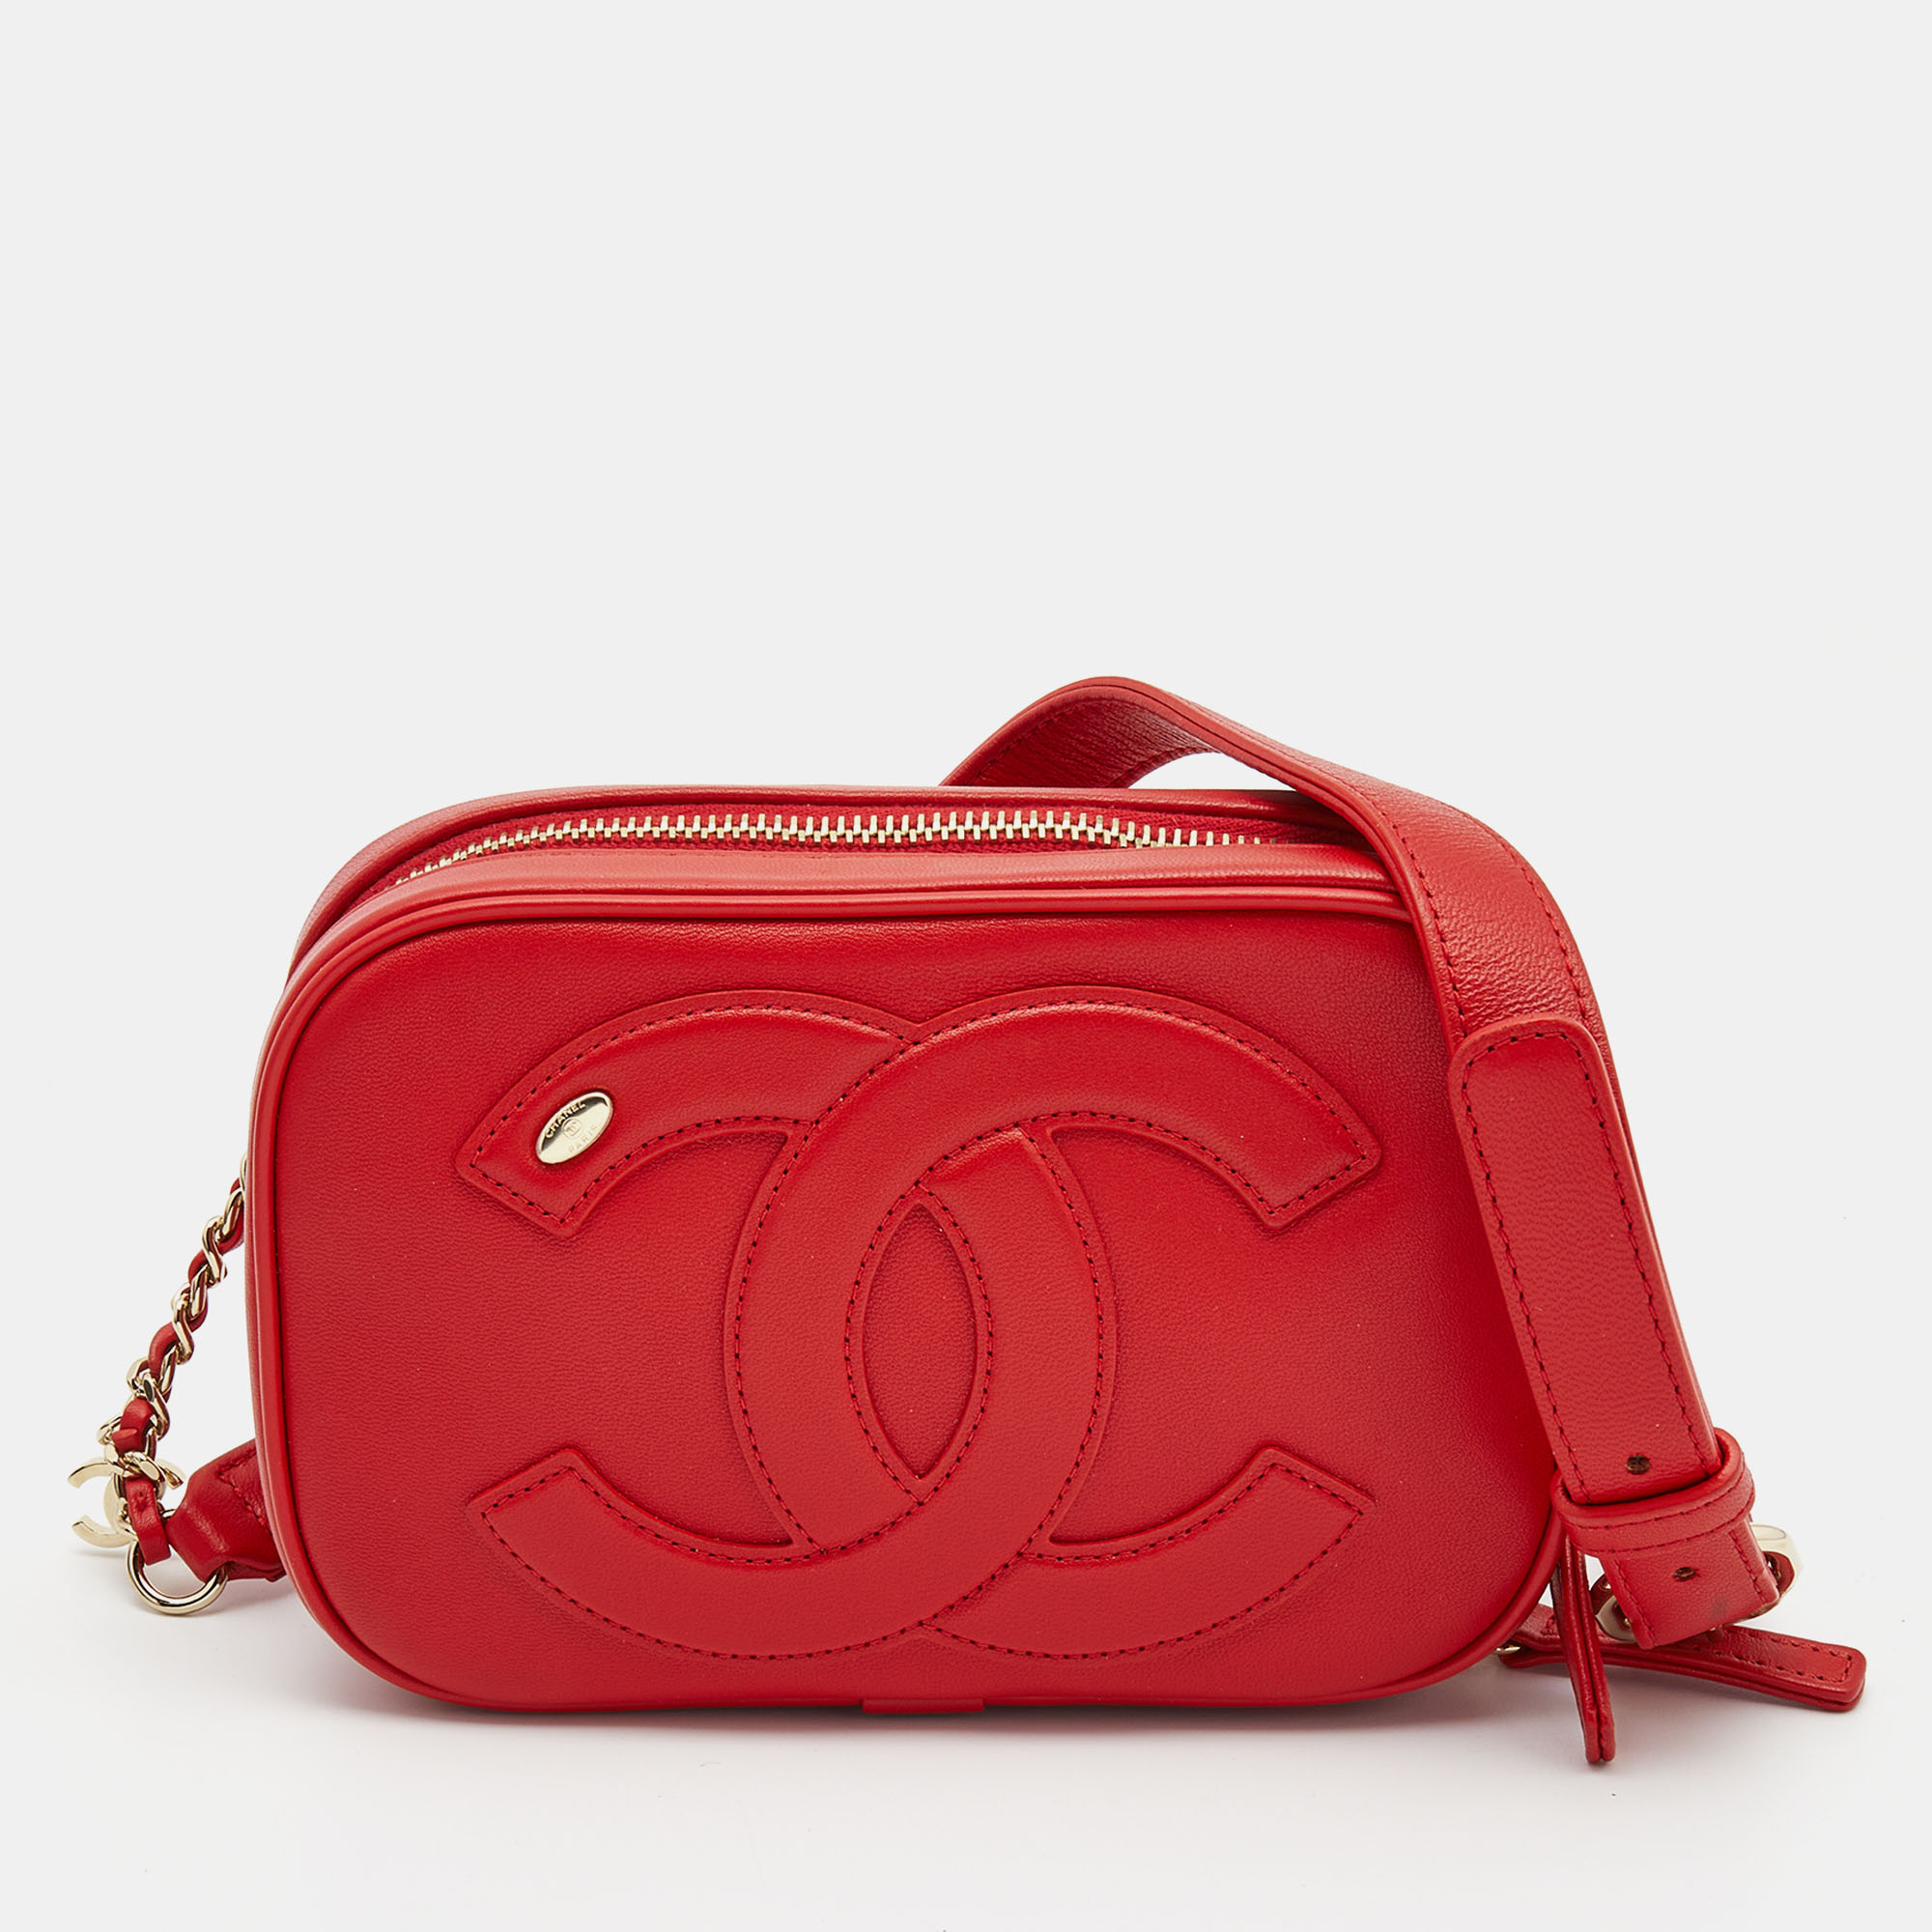 HealthdesignShops, Chanel Handbag 401626